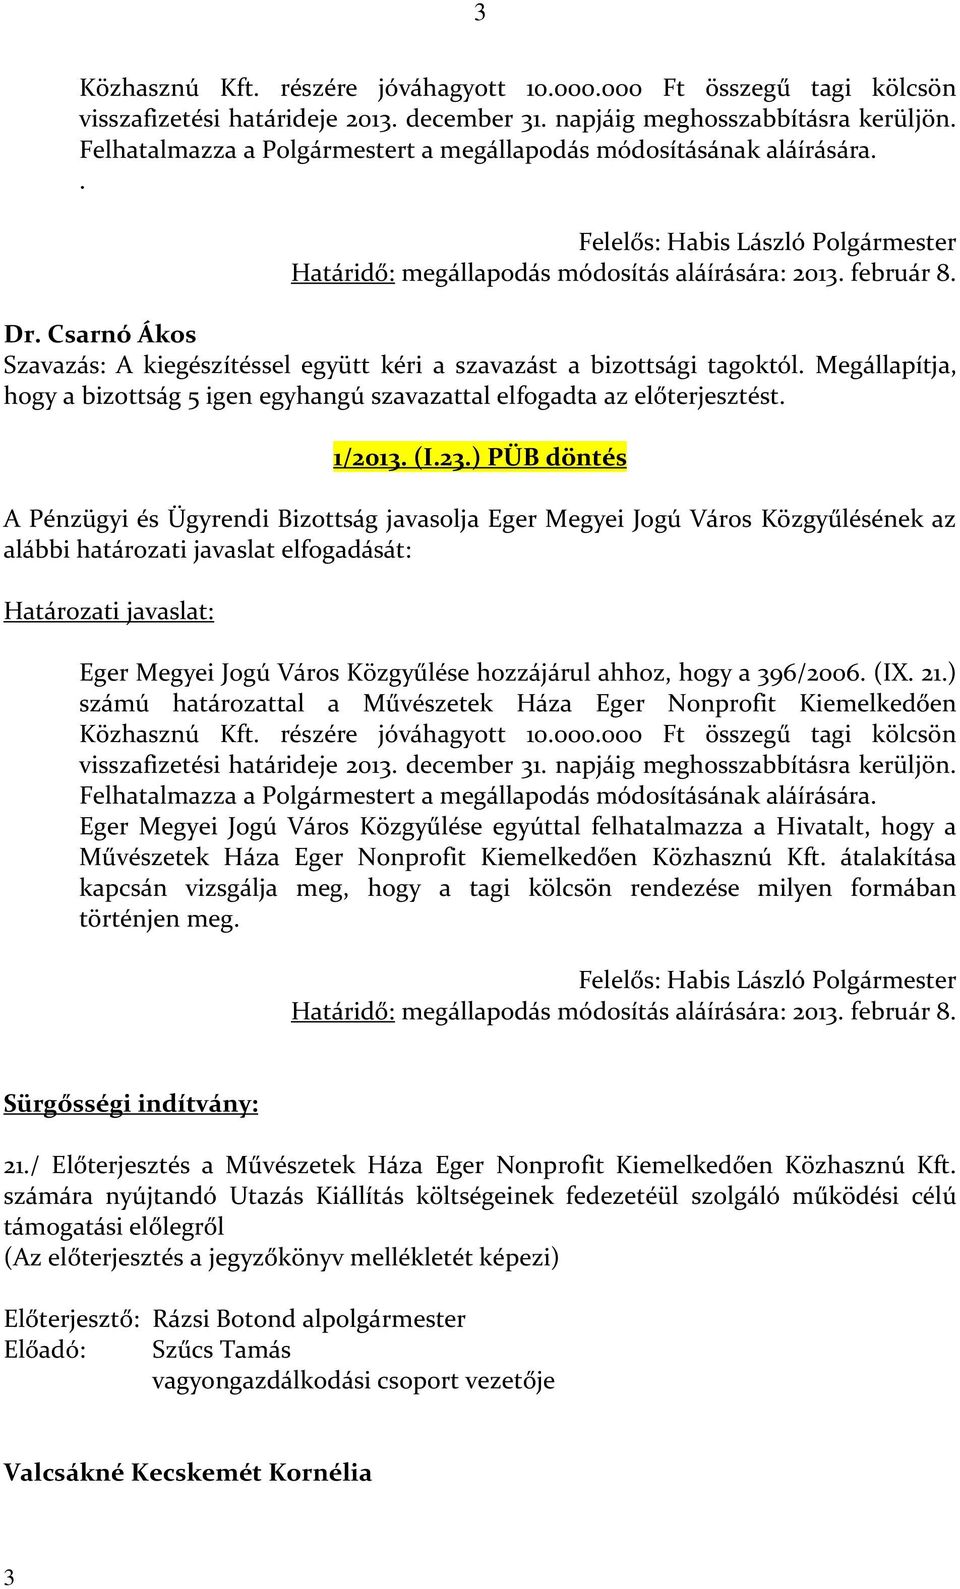 Csarnó Ákos Szavazás: A kiegészítéssel együtt kéri a szavazást a bizottsági tagoktól. Megállapítja, hogy a bizottság 5 igen egyhangú szavazattal elfogadta az előterjesztést. 1/2013. (I.23.